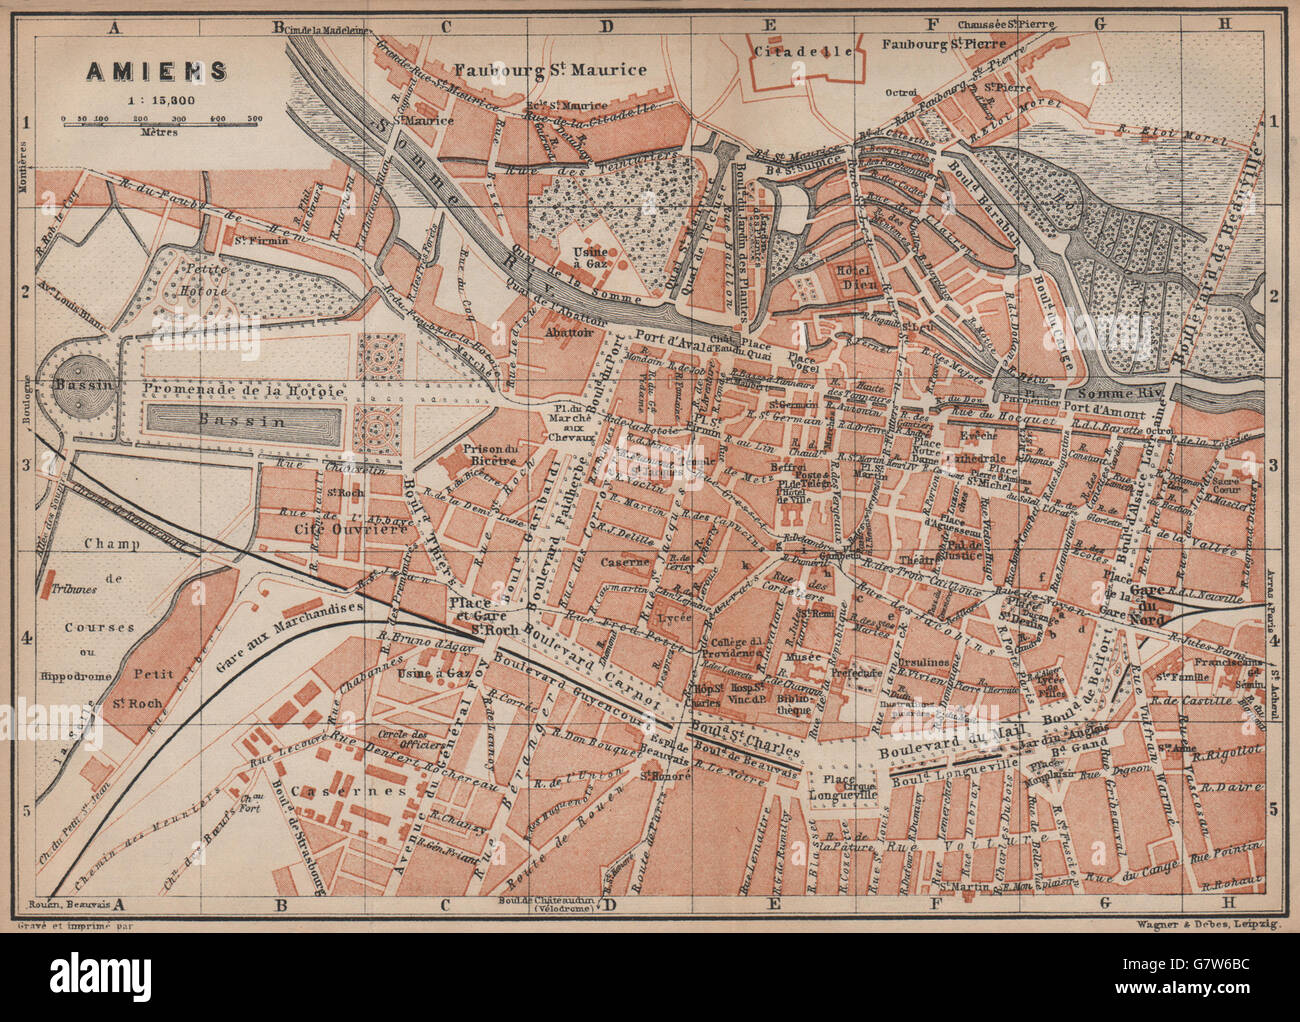 AMIENS antique town city plan de la ville BAEDEKER 1905 old map Somme carte 